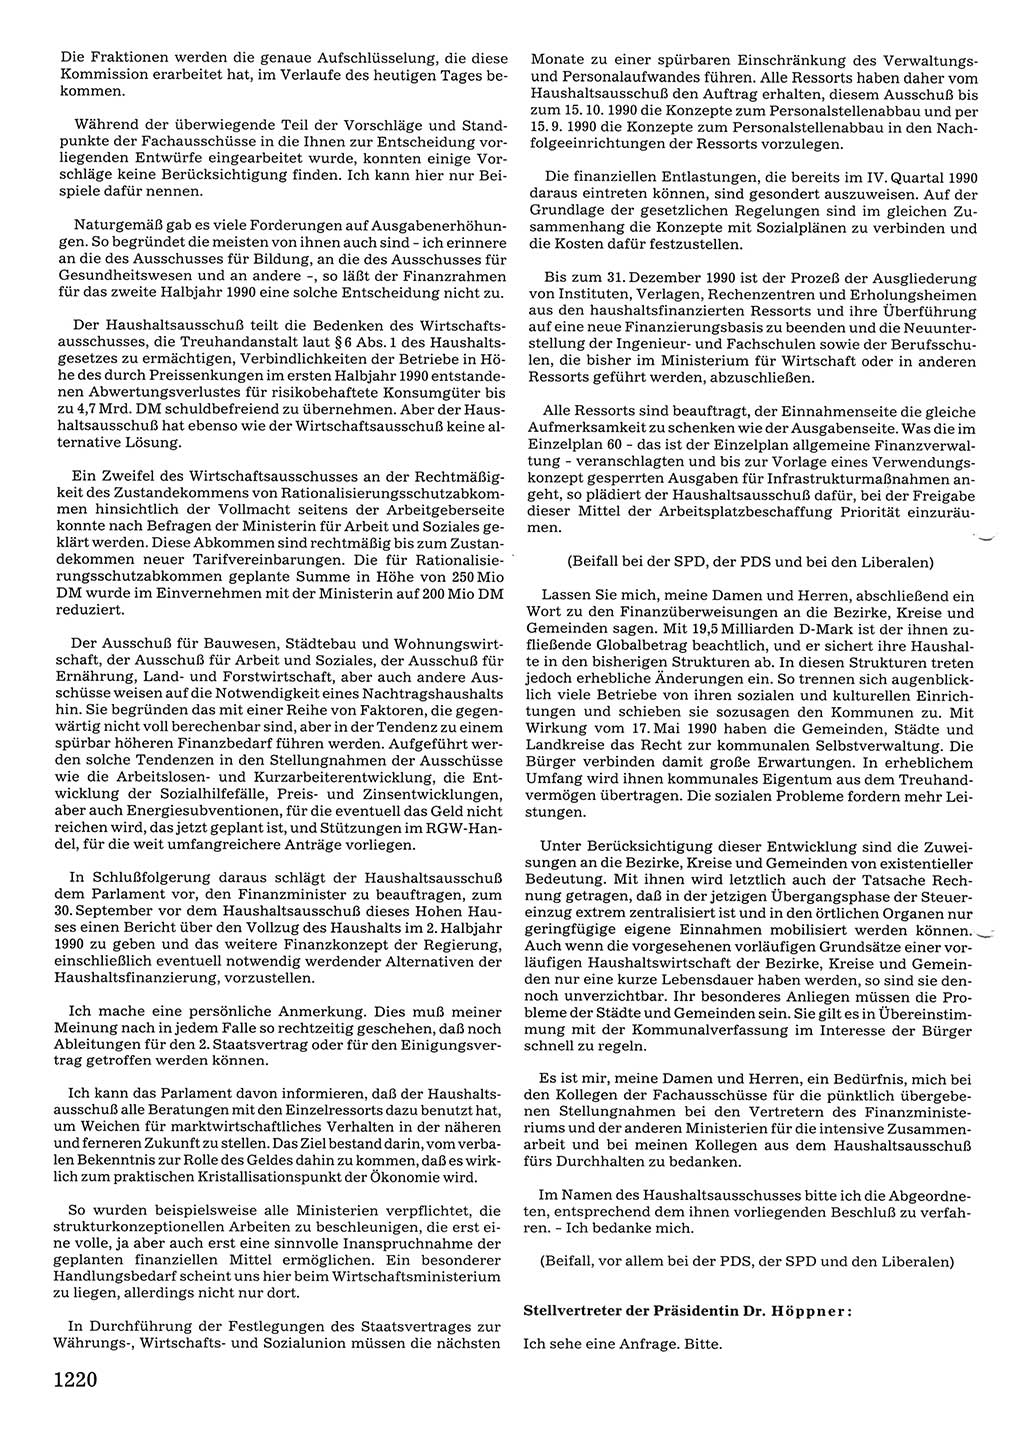 Tagungen der Volkskammer (VK) der Deutschen Demokratischen Republik (DDR), 10. Wahlperiode 1990, Seite 1220 (VK. DDR 10. WP. 1990, Prot. Tg. 1-38, 5.4.-2.10.1990, S. 1220)